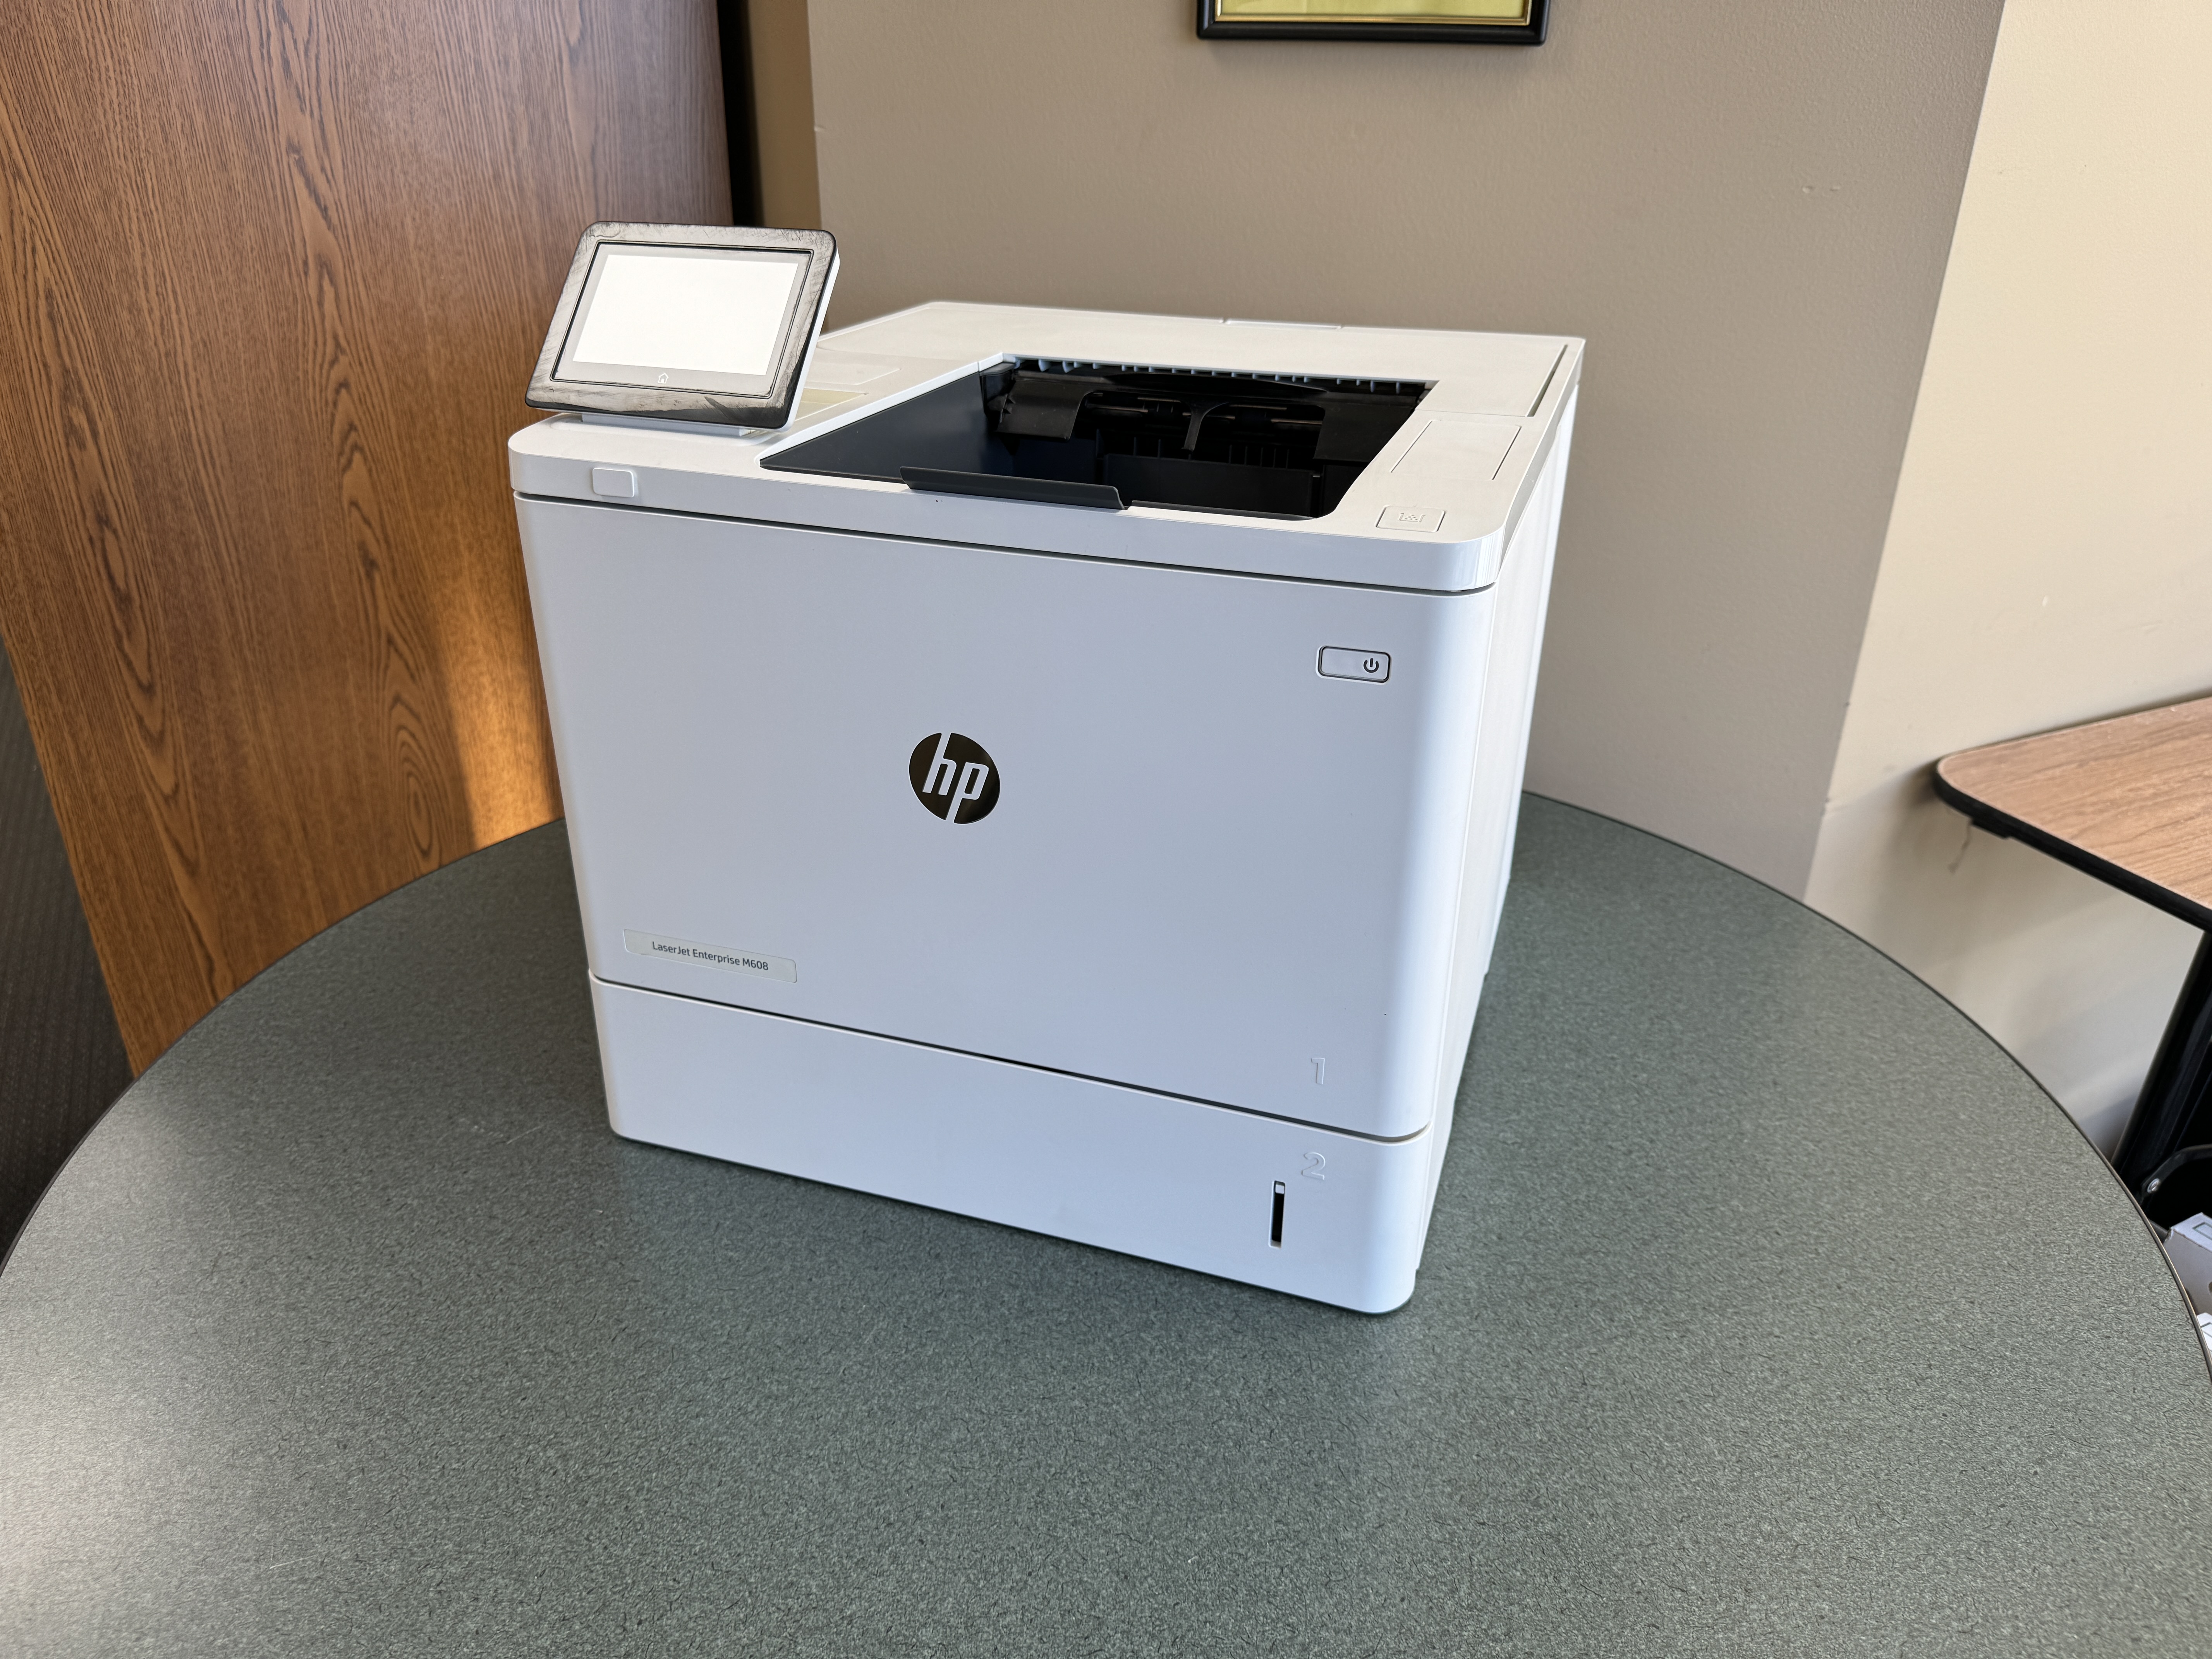 HP laser printer repair of a m608 printer. 